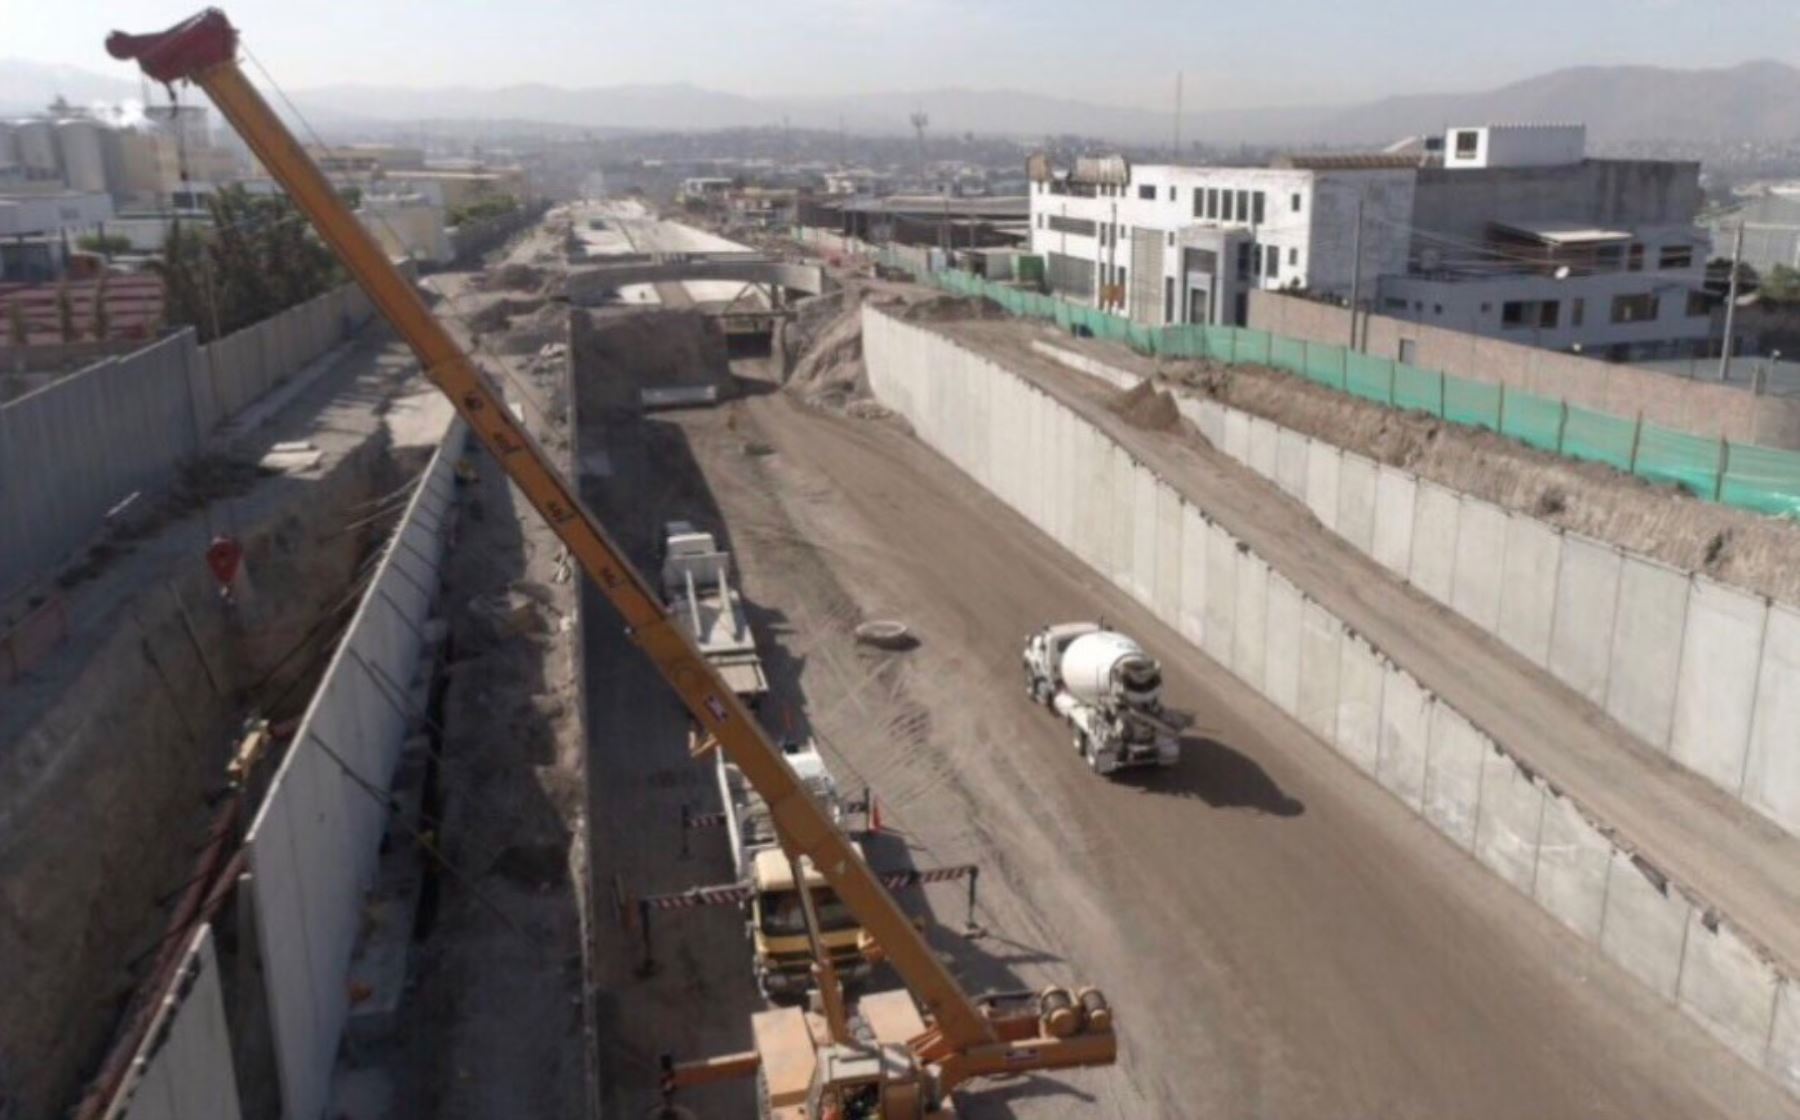 La construcción del tramo III de la nueva variante de Uchumayo registra un nivel de avance del 67%, destacó la gobernadora regional Yamila Osorio, quien supervisó el desarrollo de esta importante obra vial que mejorará notablemente el acceso a la ciudad de Arequipa.